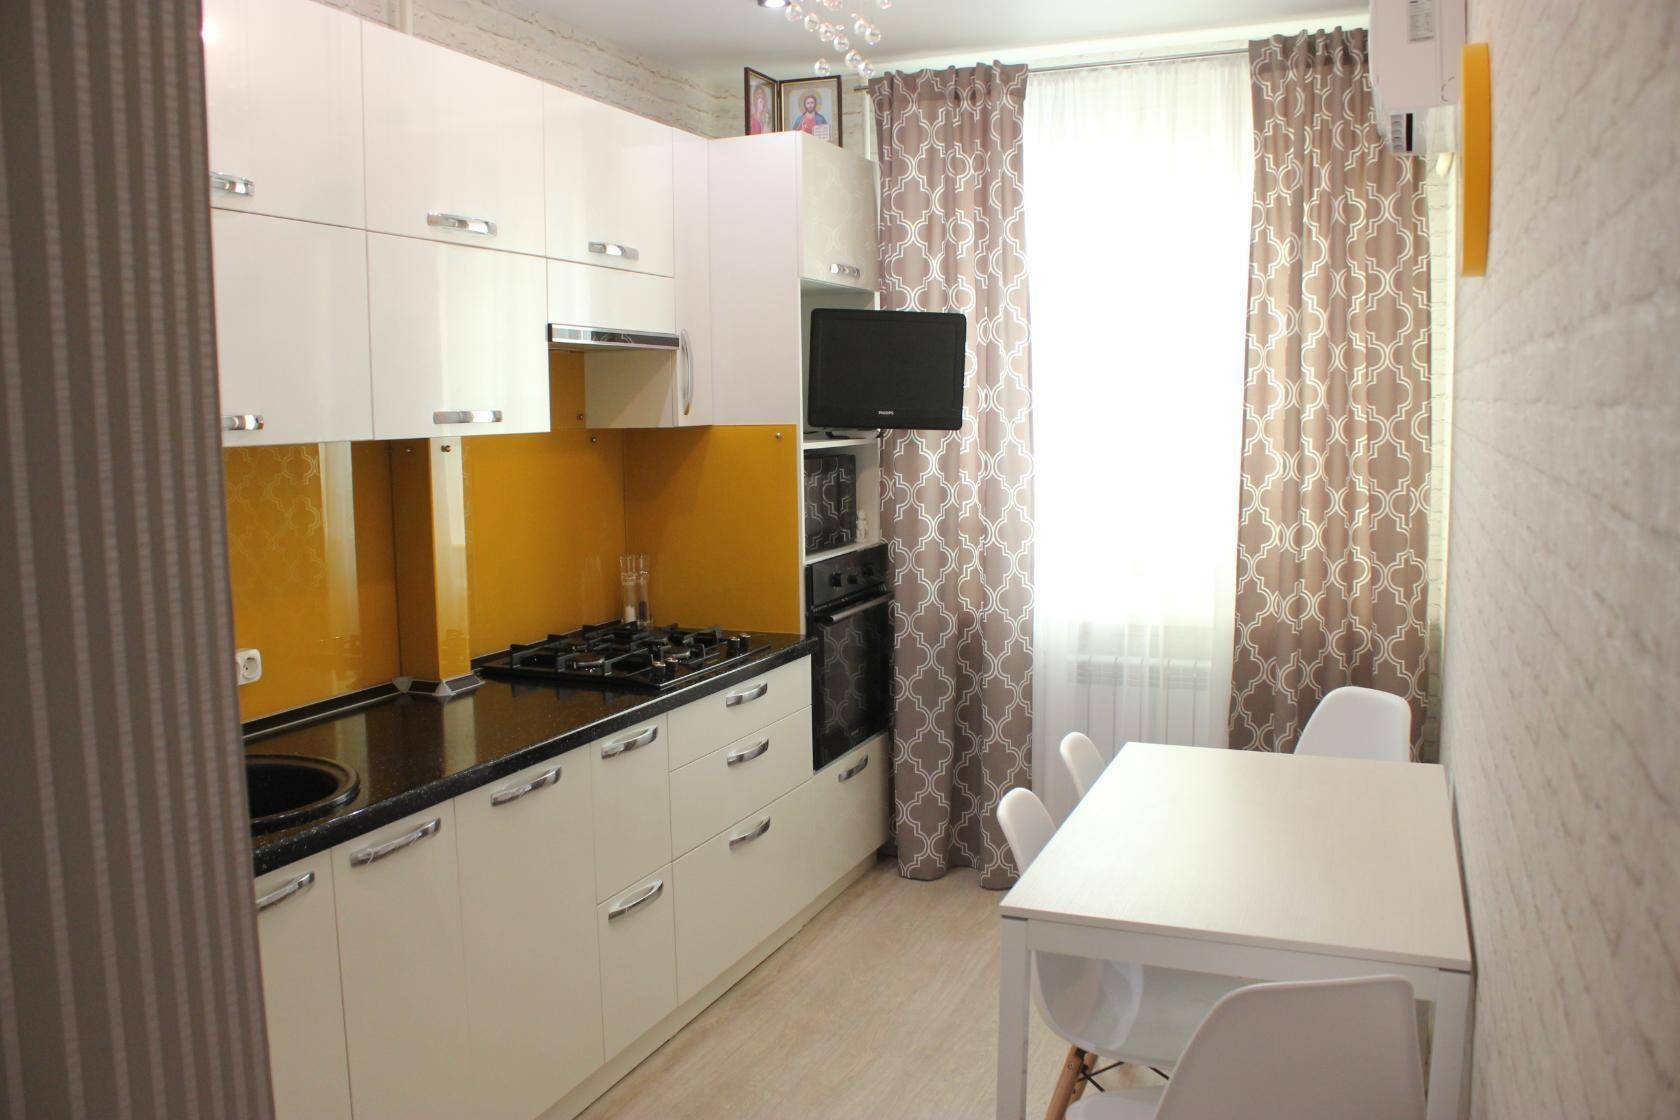 Белая кухня 7 кв м "Икеа" в Москве (3 фото, отзыв + цена)